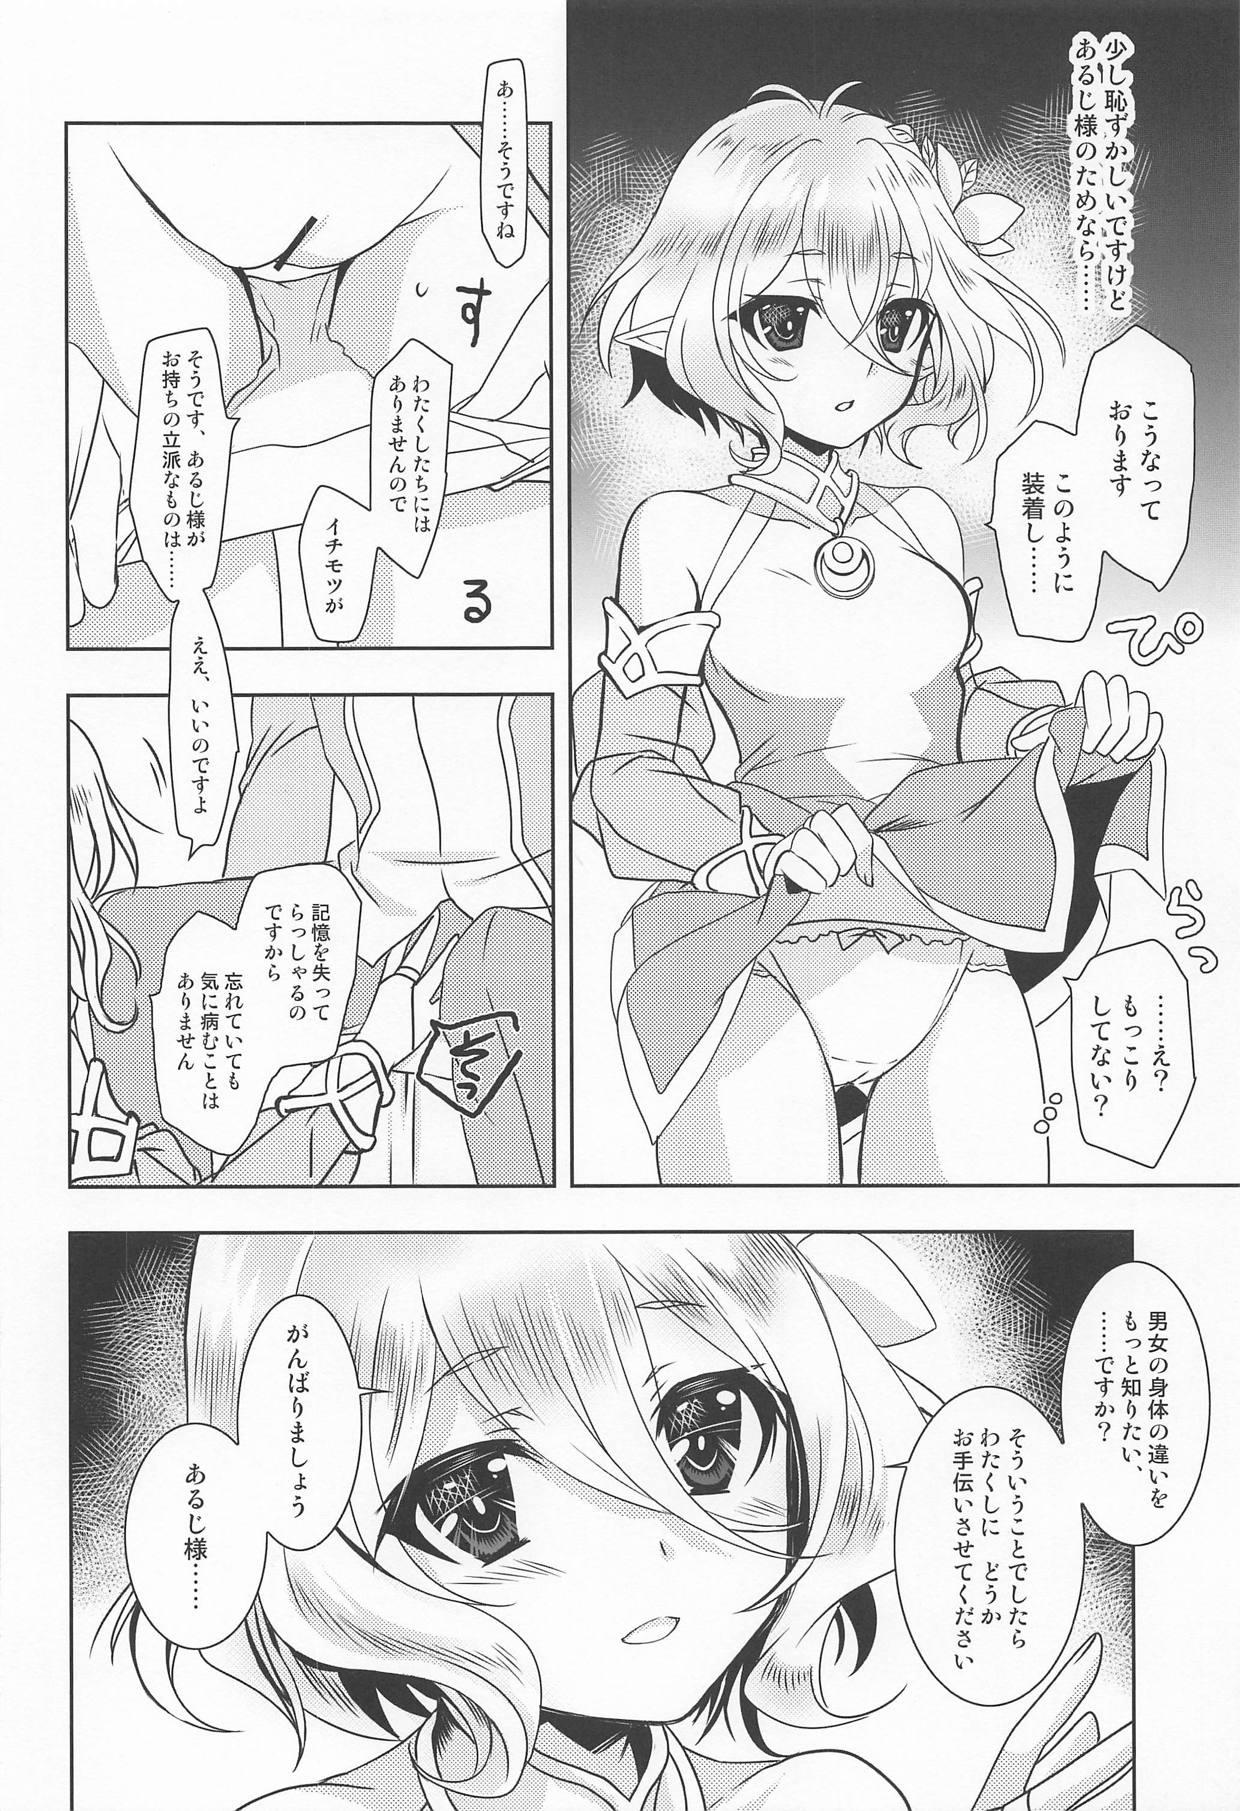 Ride Aruji-sama ni Naisho no Memory Piece - Princess connect Casal - Page 5